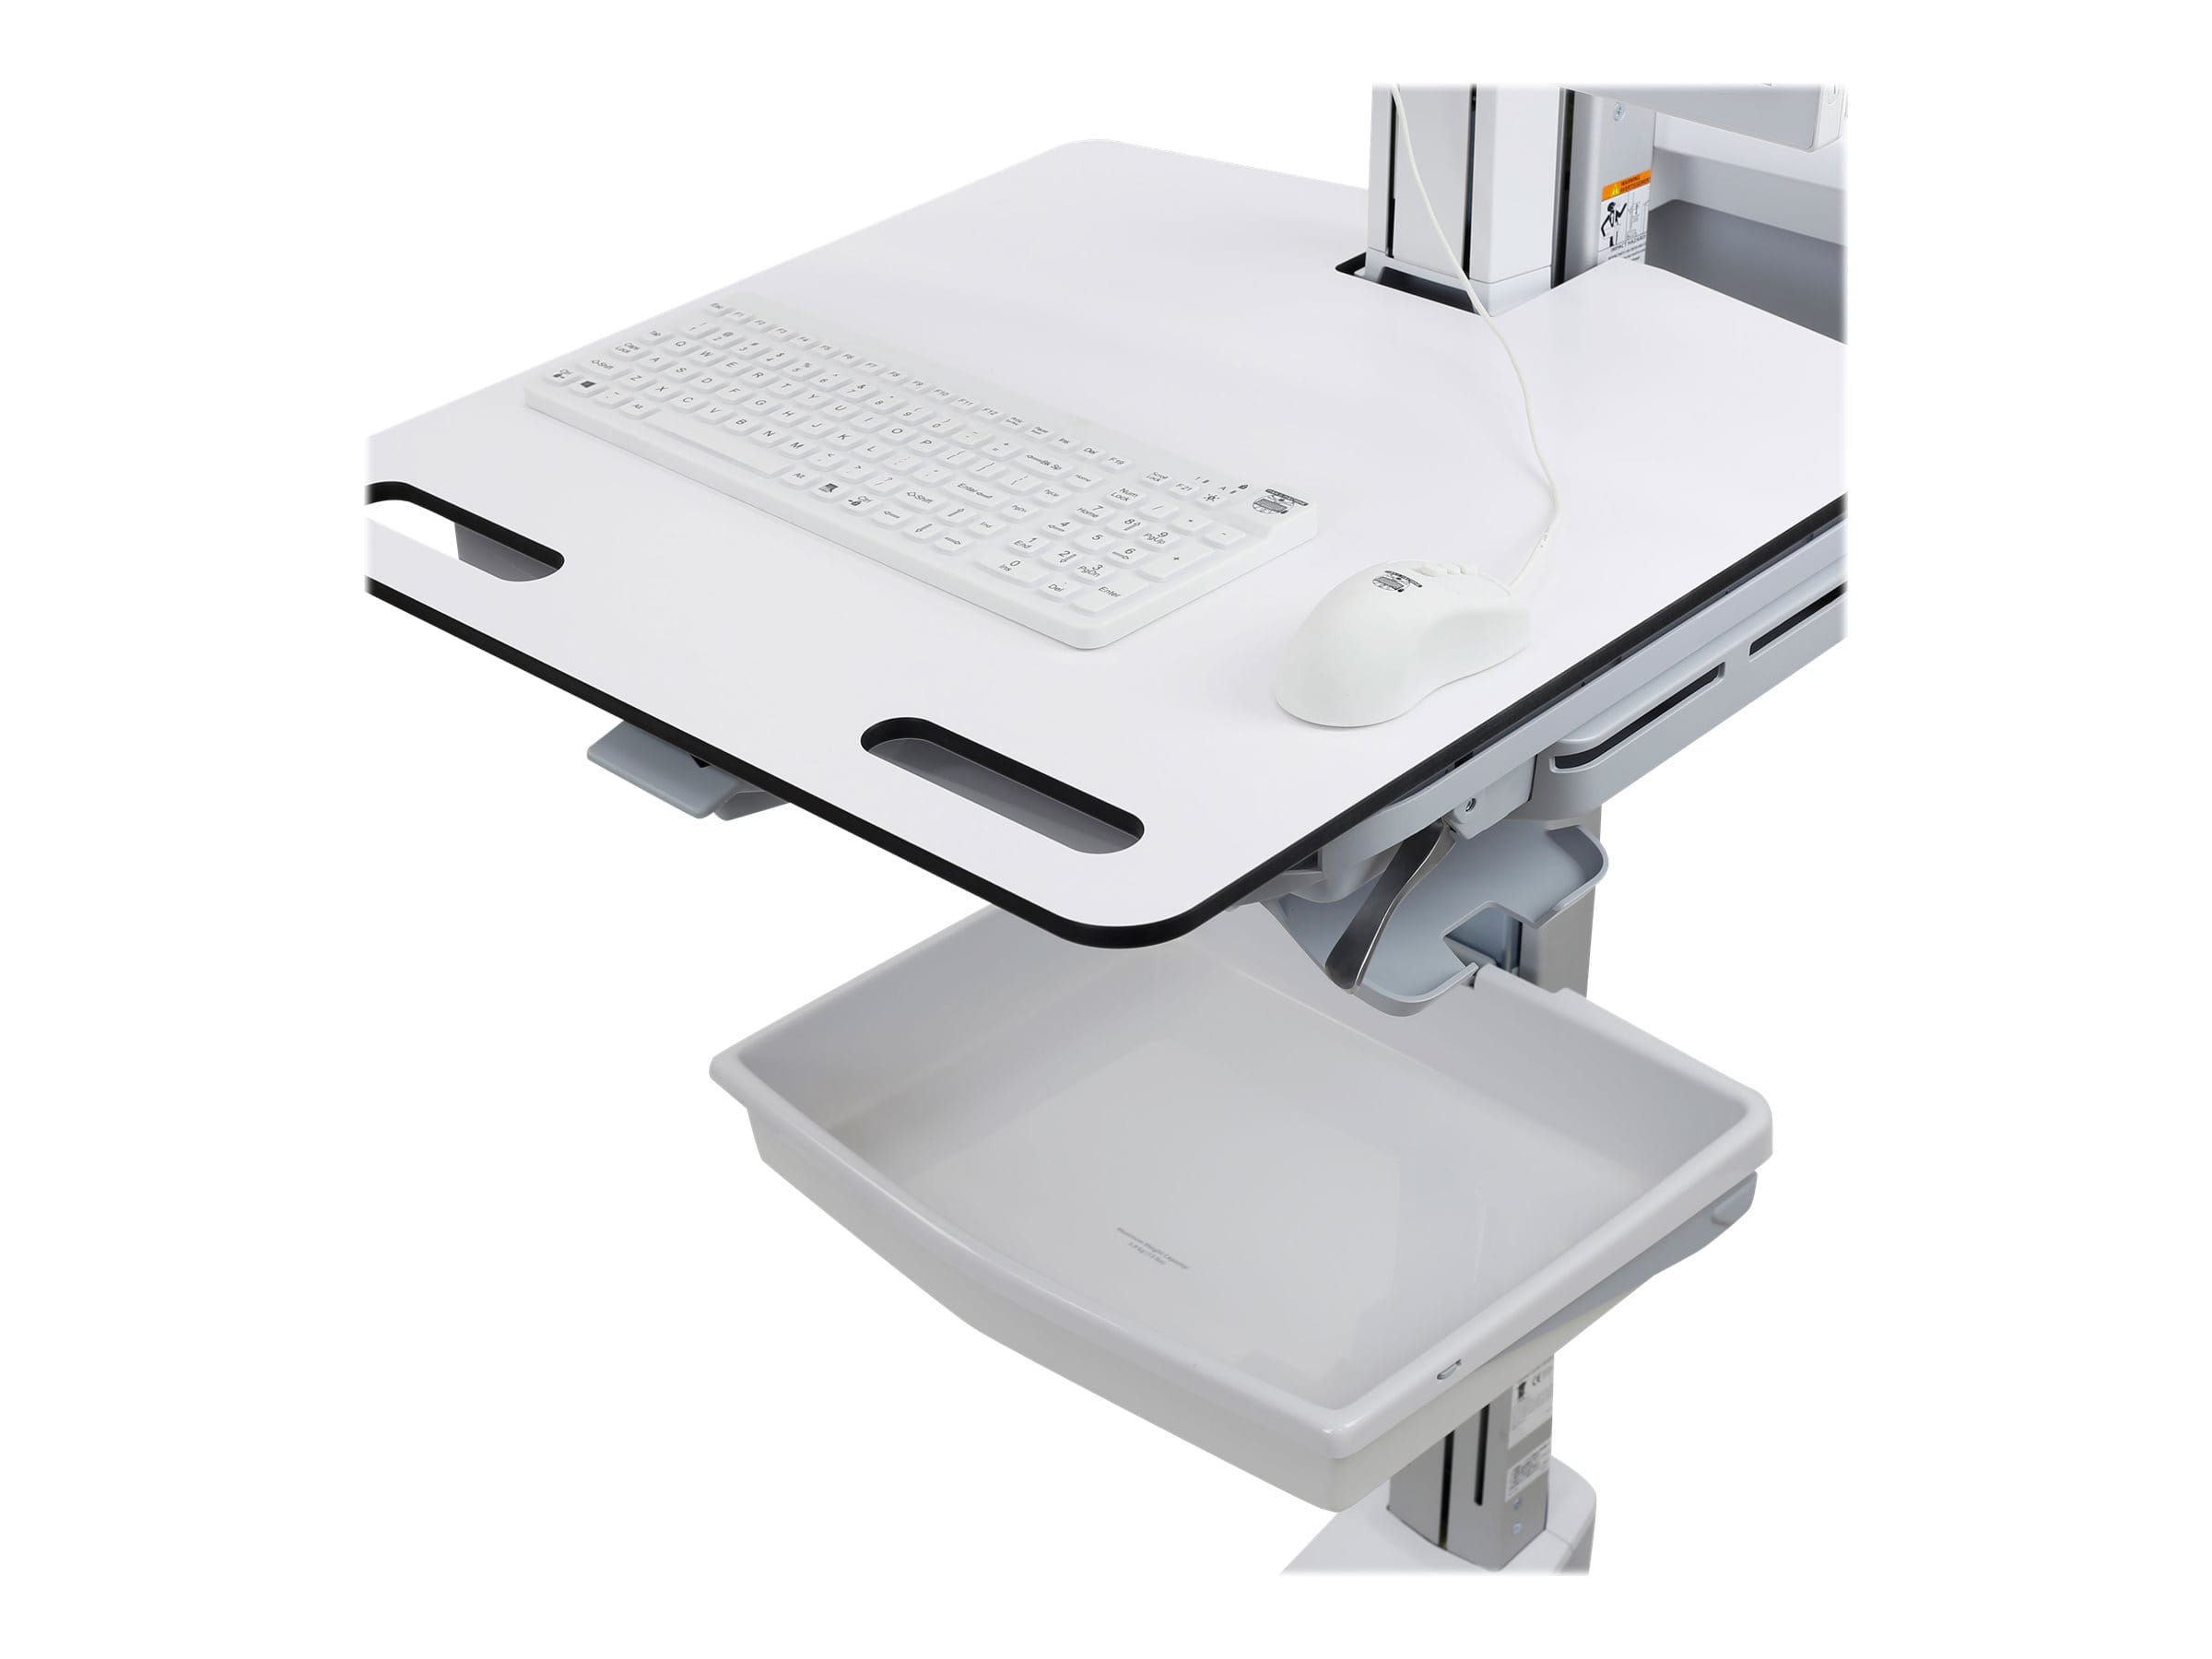 Ergotron Cart - Sliding Worksurface - Wagen - für LCD-Display / PC-Ausrüstung - medizinisch - Aluminium, verzinker Stahl, hochwertiger Kunststoff - Bildschirmgröße: bis zu 61 cm (bis zu 24 Zoll)